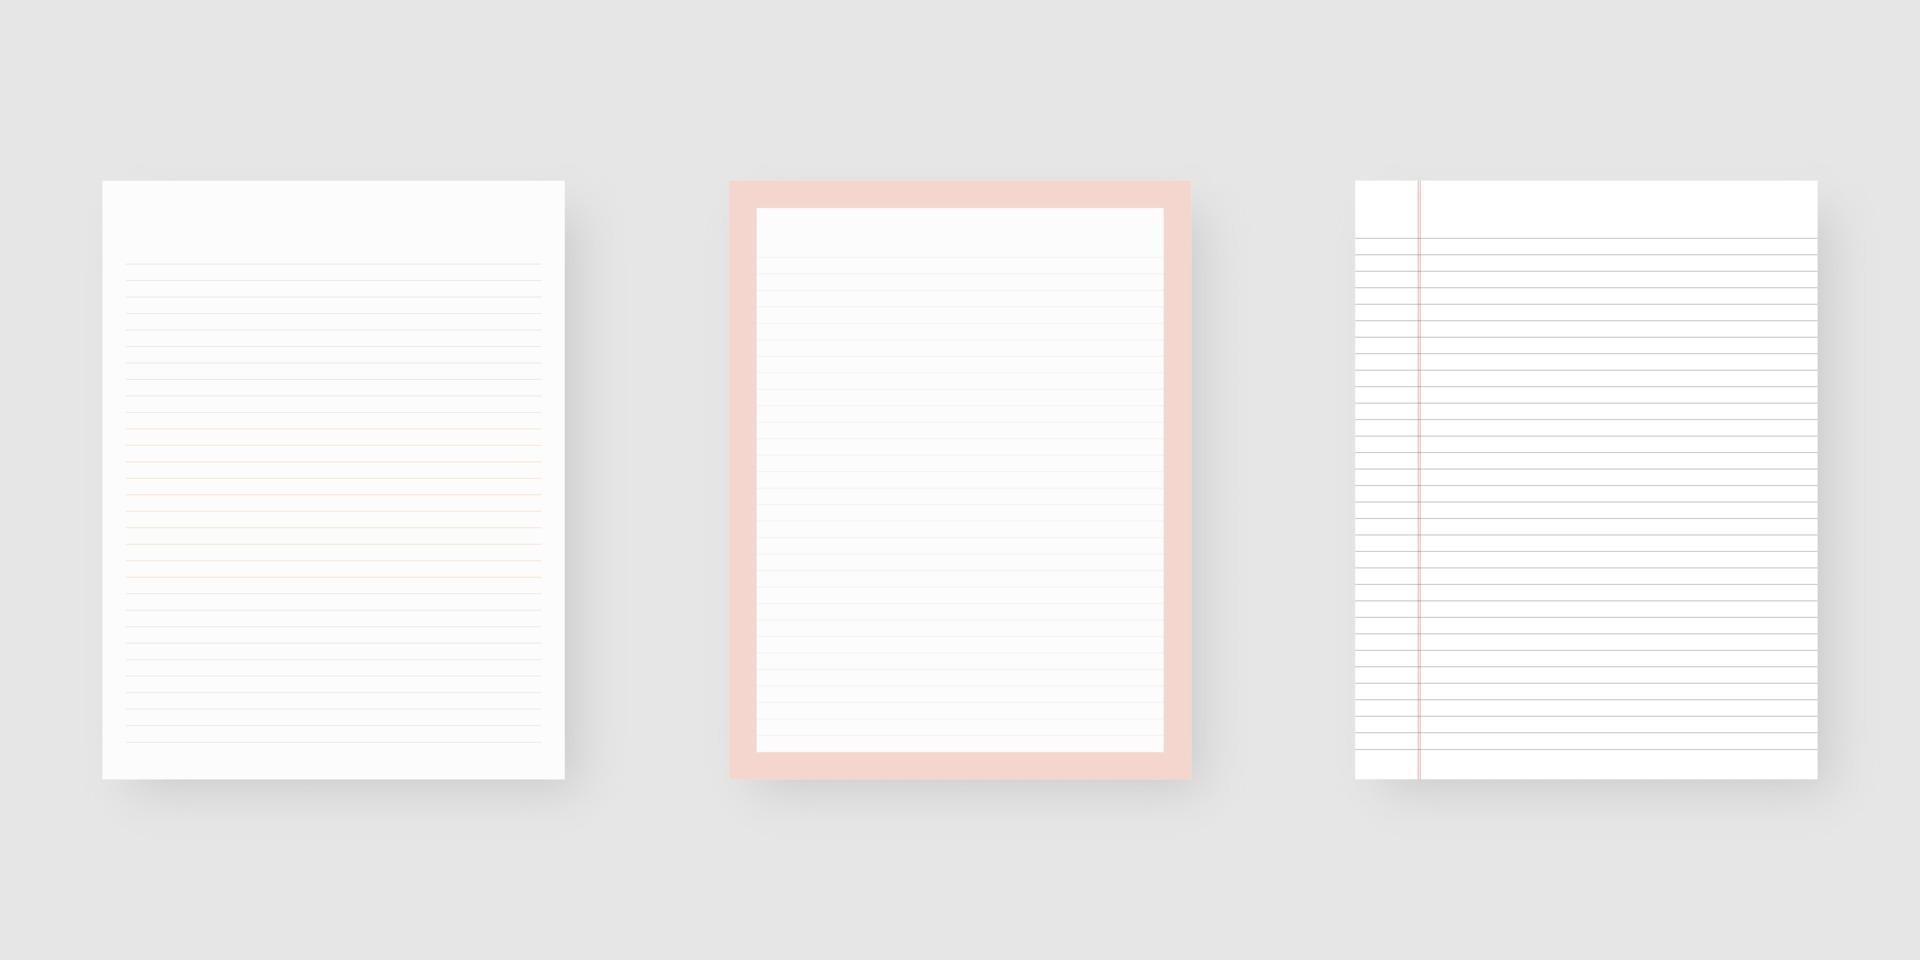 conjunto de papel de caderno. folha de modelo de papel pautado. maquete isolada. design de modelo. ilustração vetorial realista. vetor